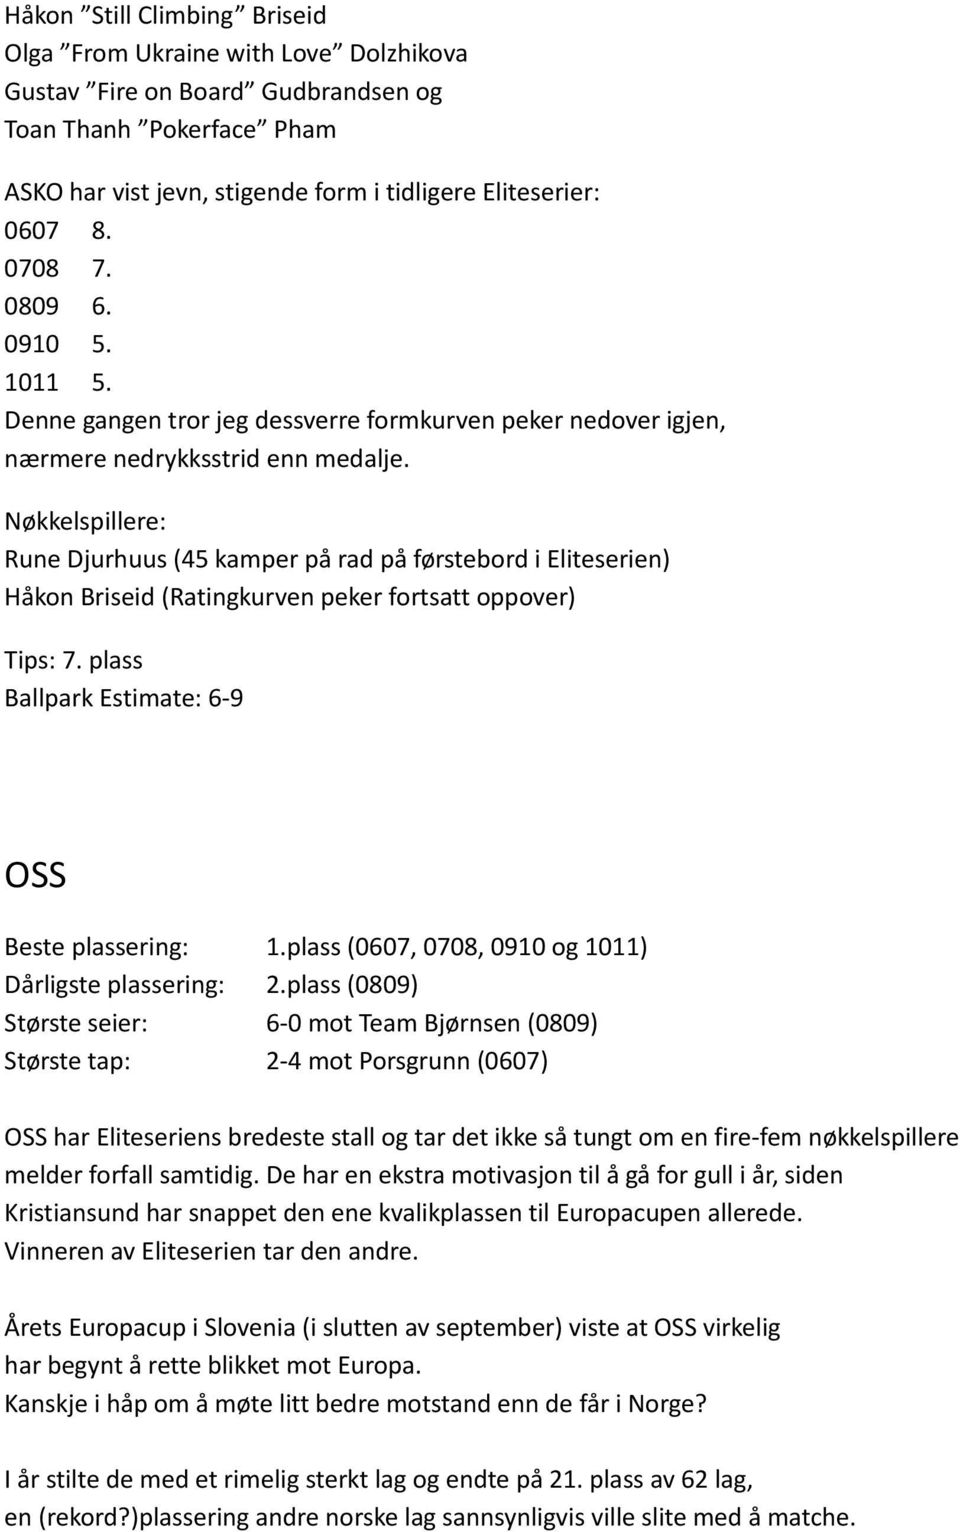 Nøkkelspillere: Rune Djurhuus (45 kamper på rad på førstebord i Eliteserien) Håkon Briseid (Ratingkurven peker fortsatt oppover) Tips: 7. plass Ballpark Estimate: 6-9 OSS Beste plassering: 1.